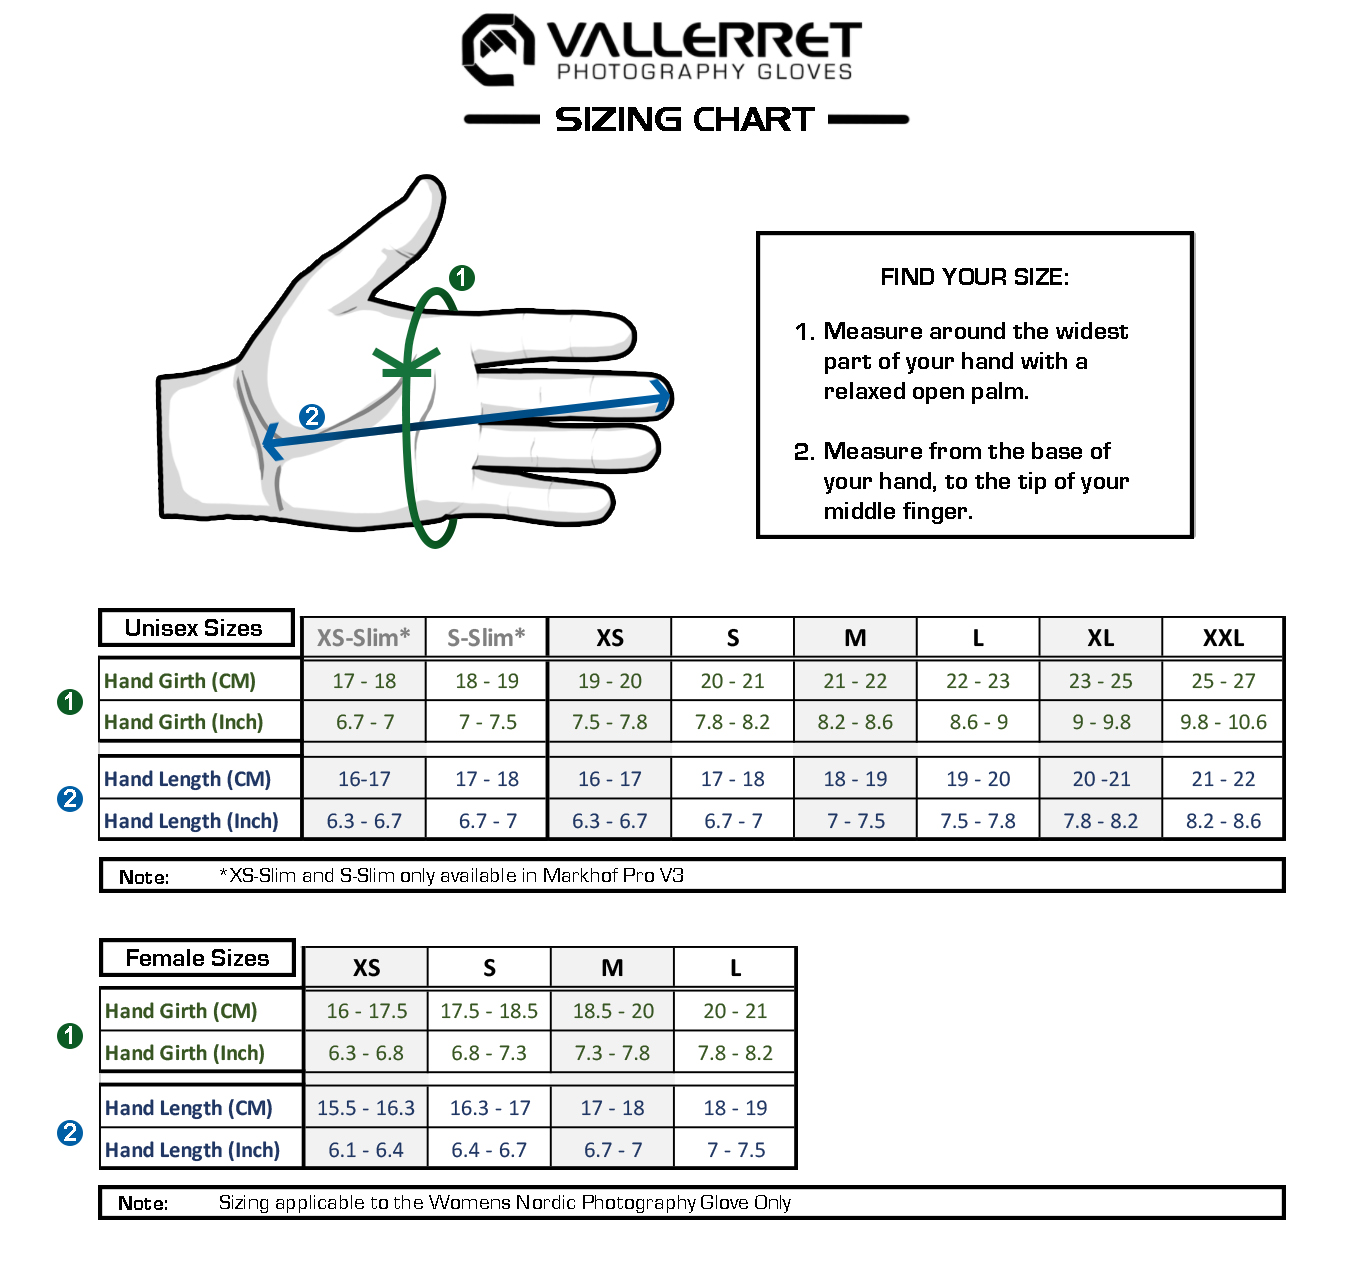 Vallerret Markhof Pro 3.0 XS Fotohandschuhe + Peak Design Cuff Handschlaufe (Handgelenkschlaufe) Schwarz